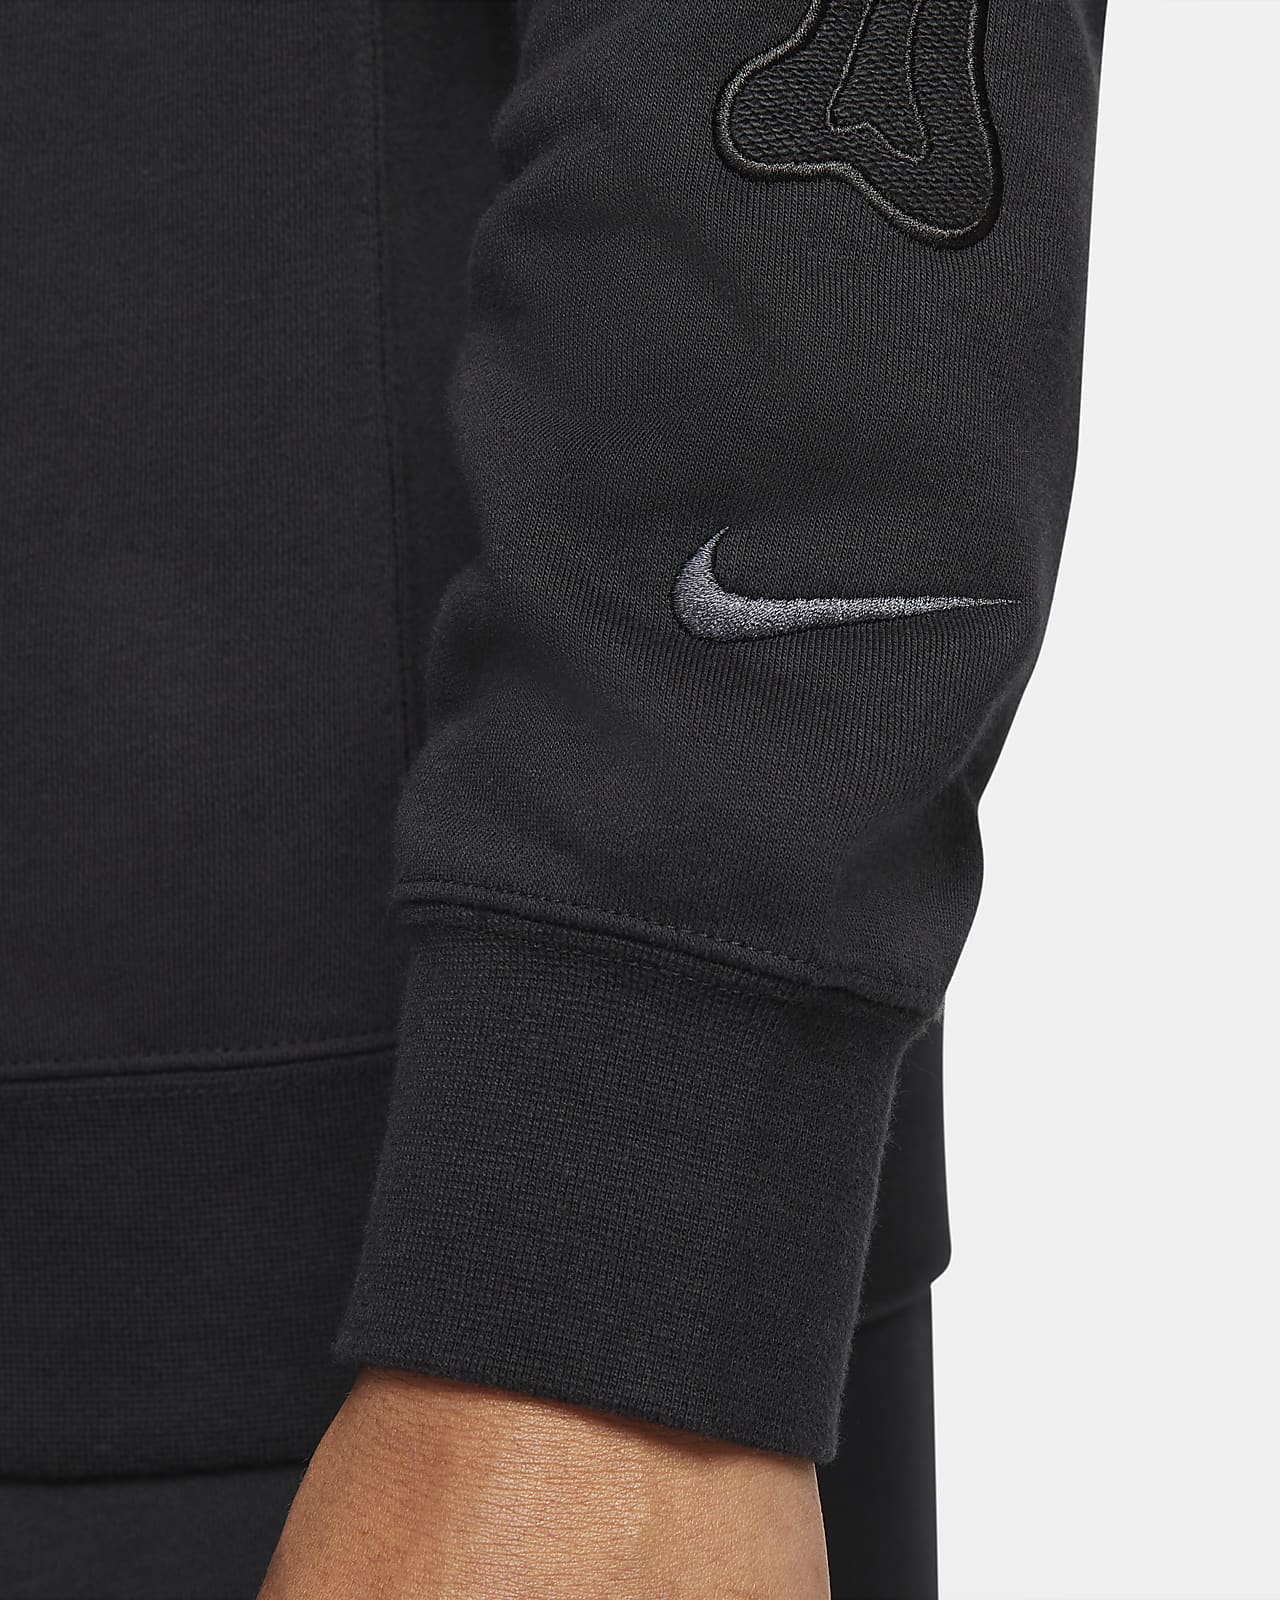 Nike Training - 742618-065 - Sweat-shirt à capuche sans manches - Gris